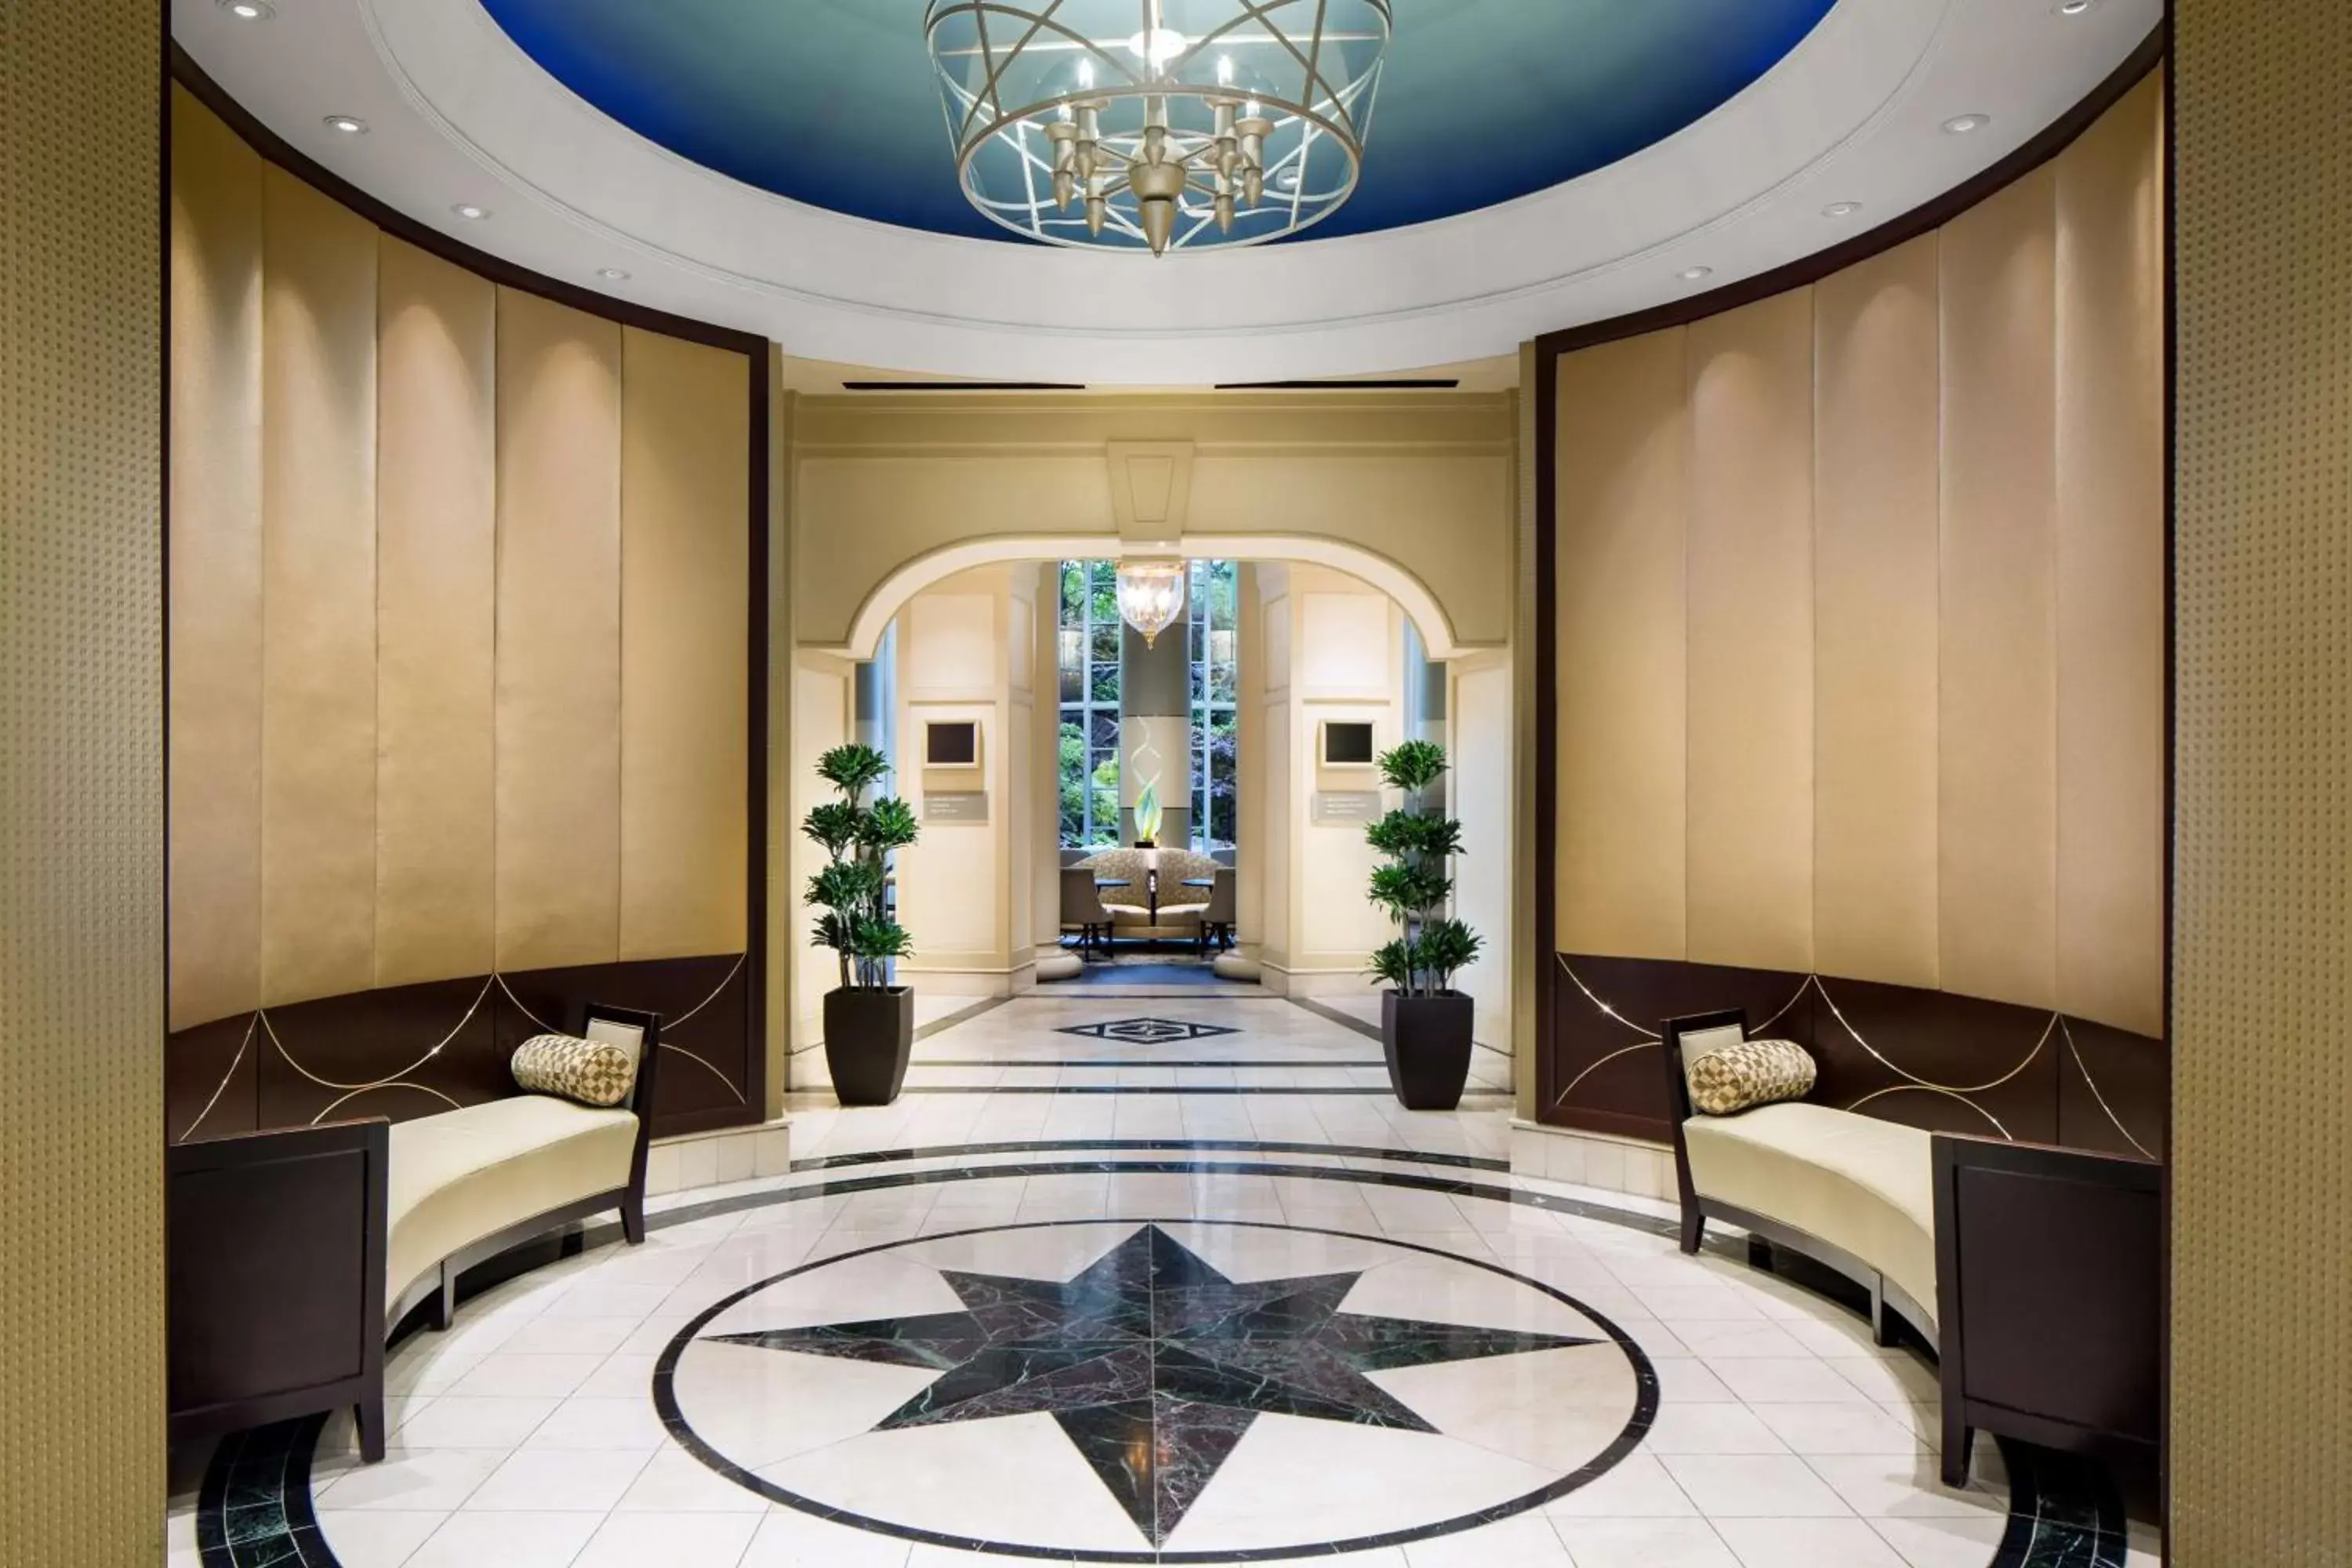 Lobby or reception in Grand Hyatt Atlanta in Buckhead